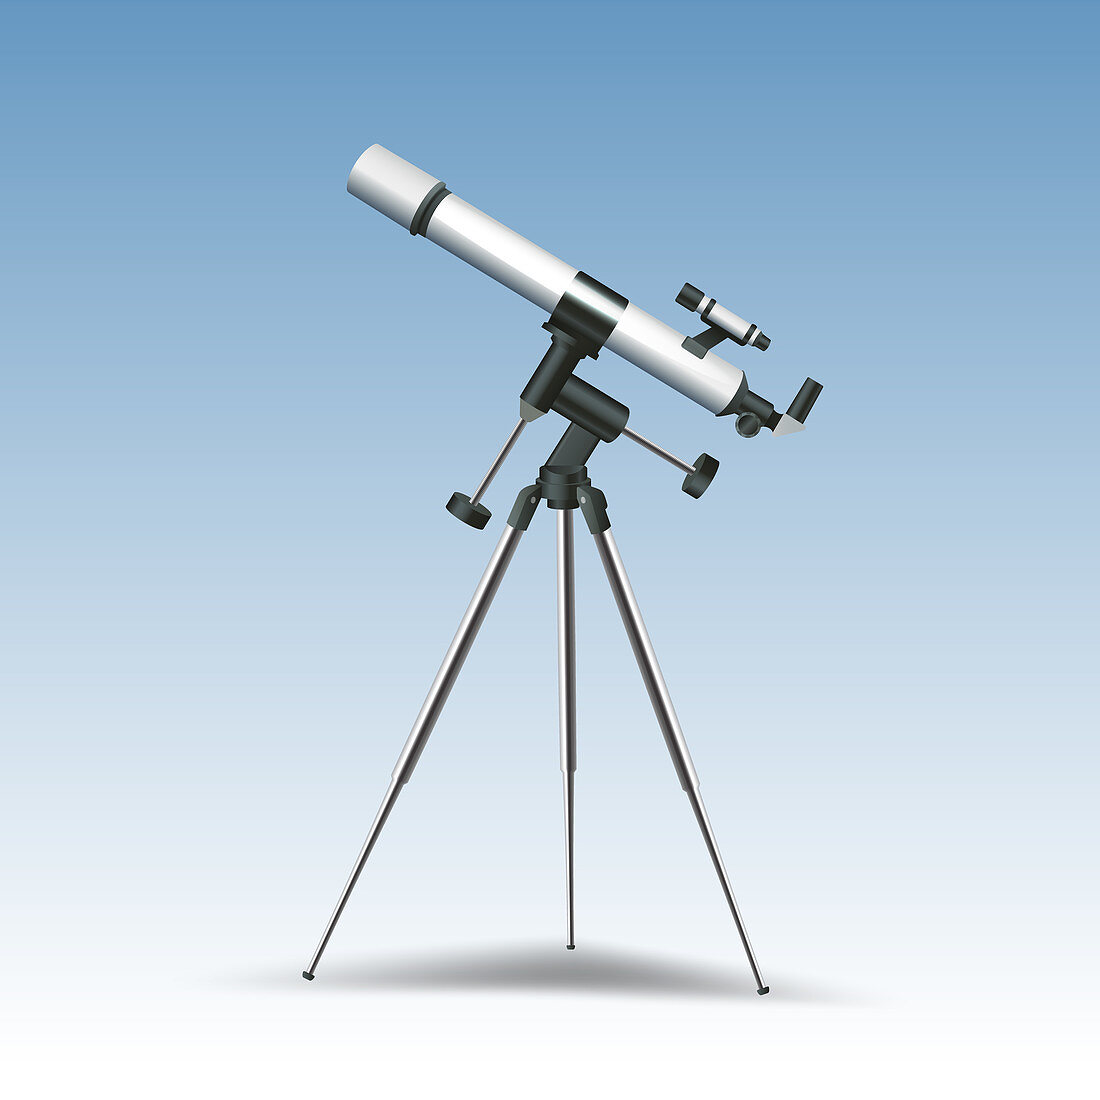 Telescope, illustration